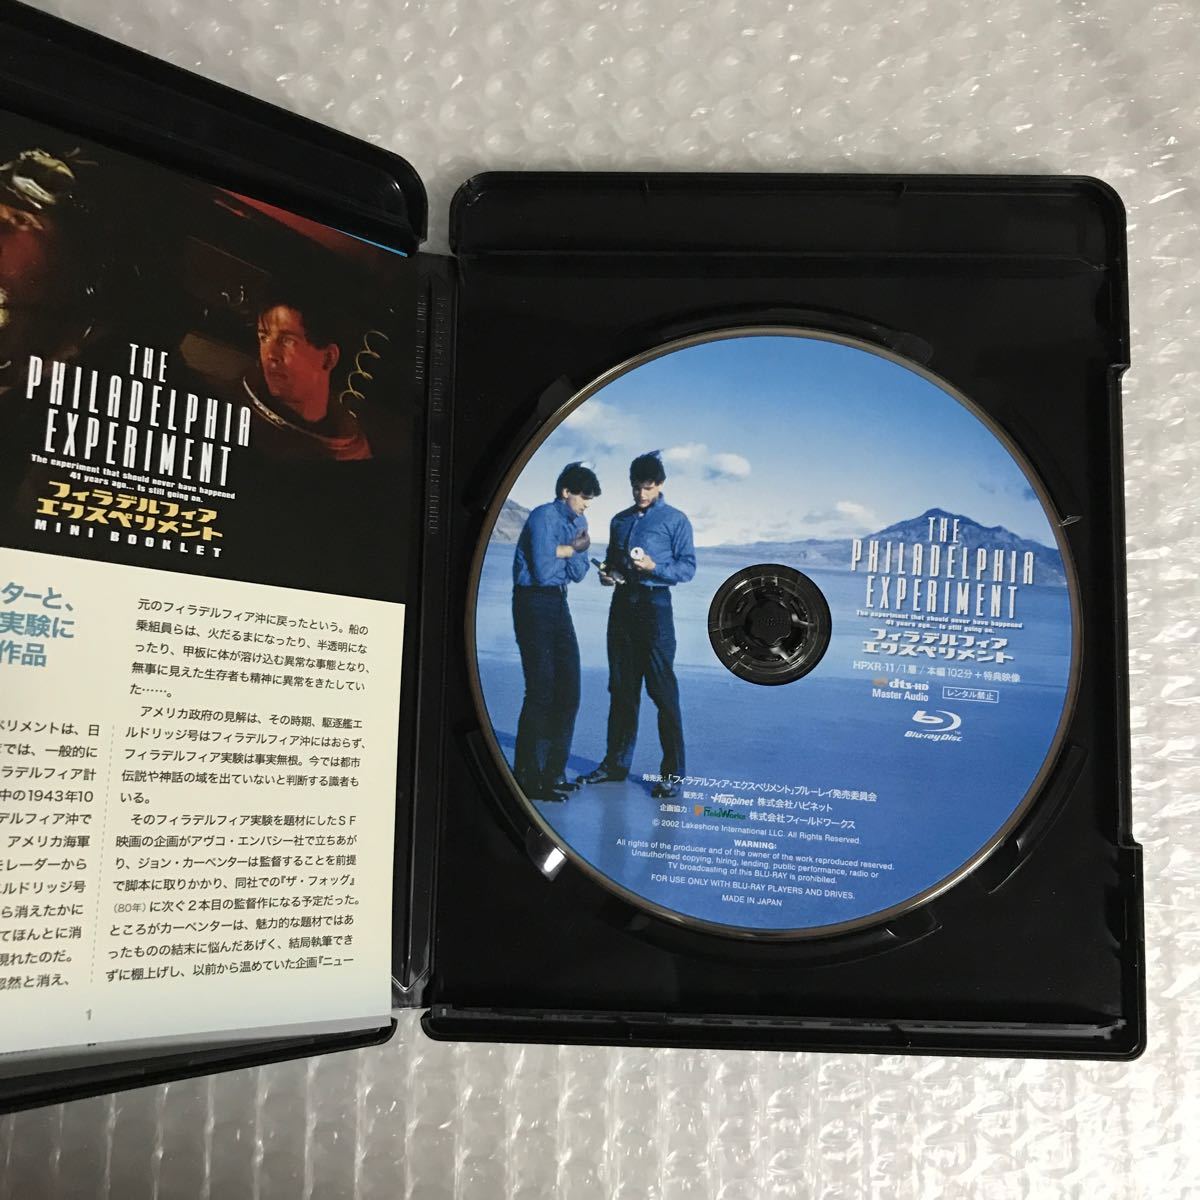 フィラデルフィア・エクスペリメント('84米) 廃盤 Blu-ray 【正規販売